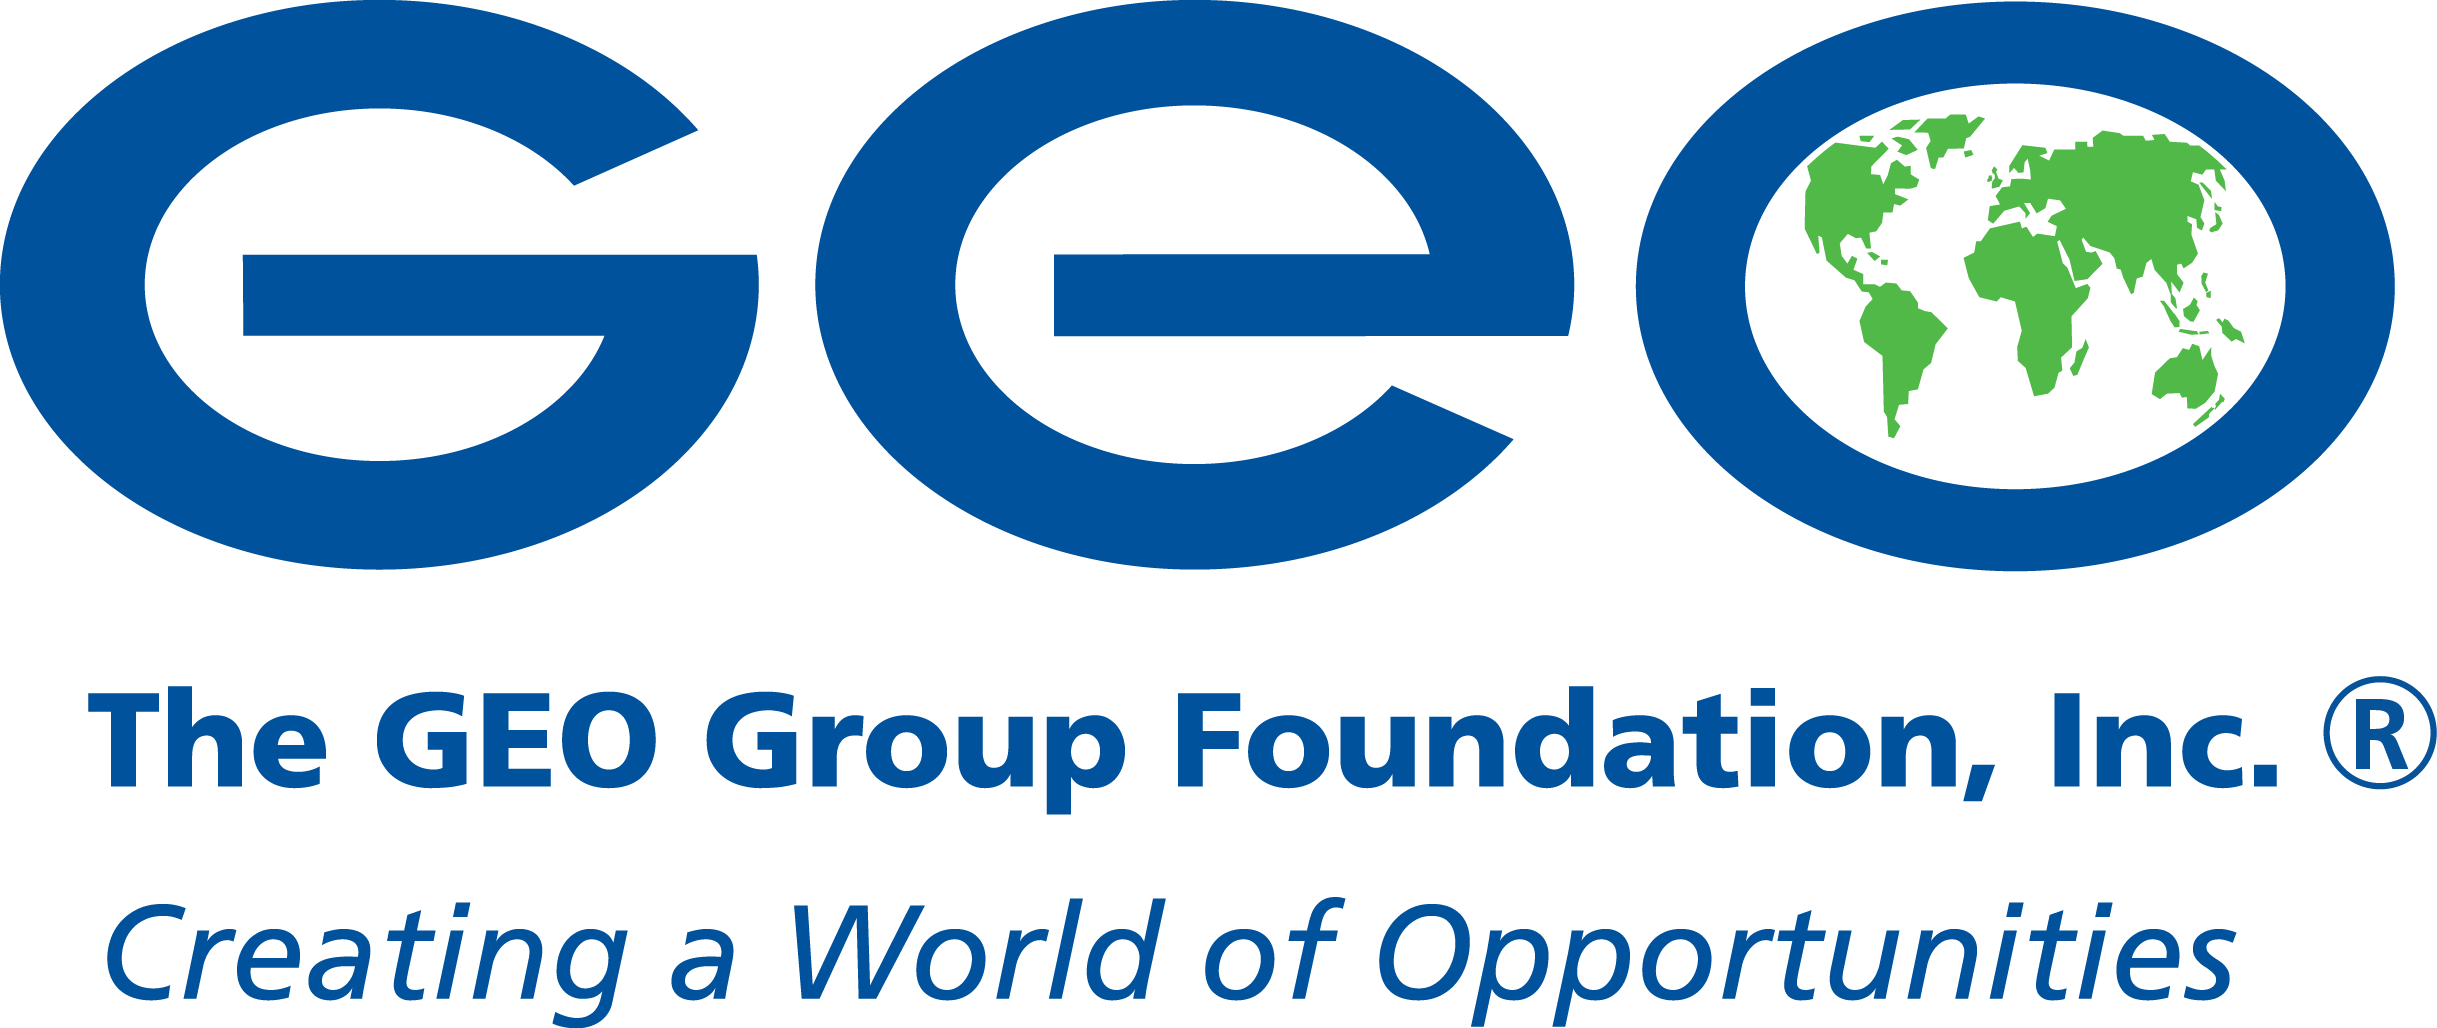 mi. Fundación Grupo GEO (Línea de Meta y Brigada de Agradecimiento)